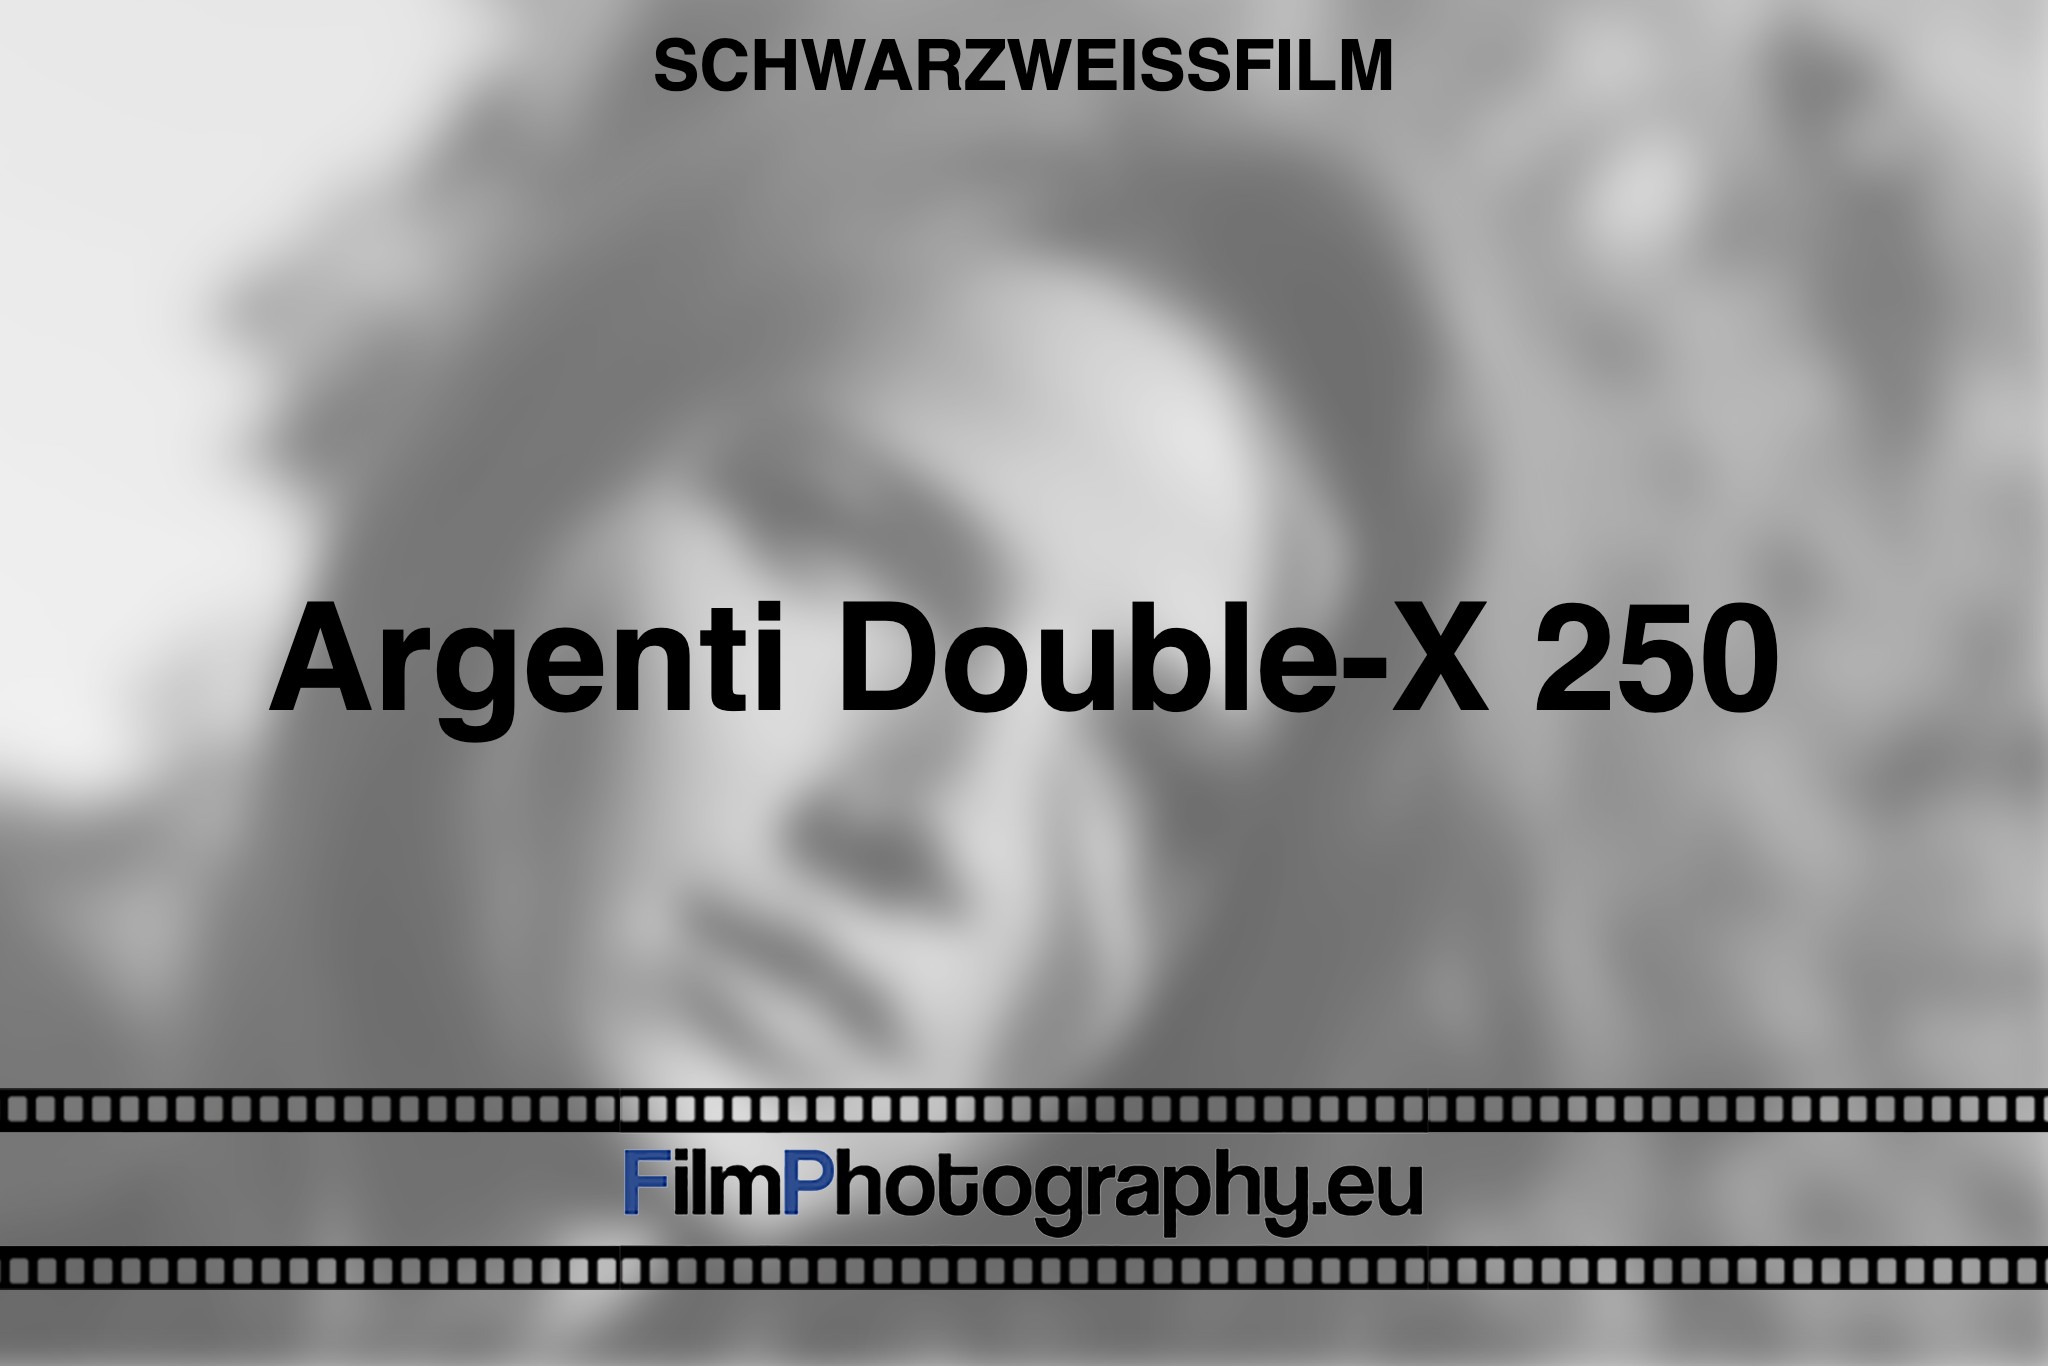 argenti-double-x-250-schwarzweißfilm-bnv